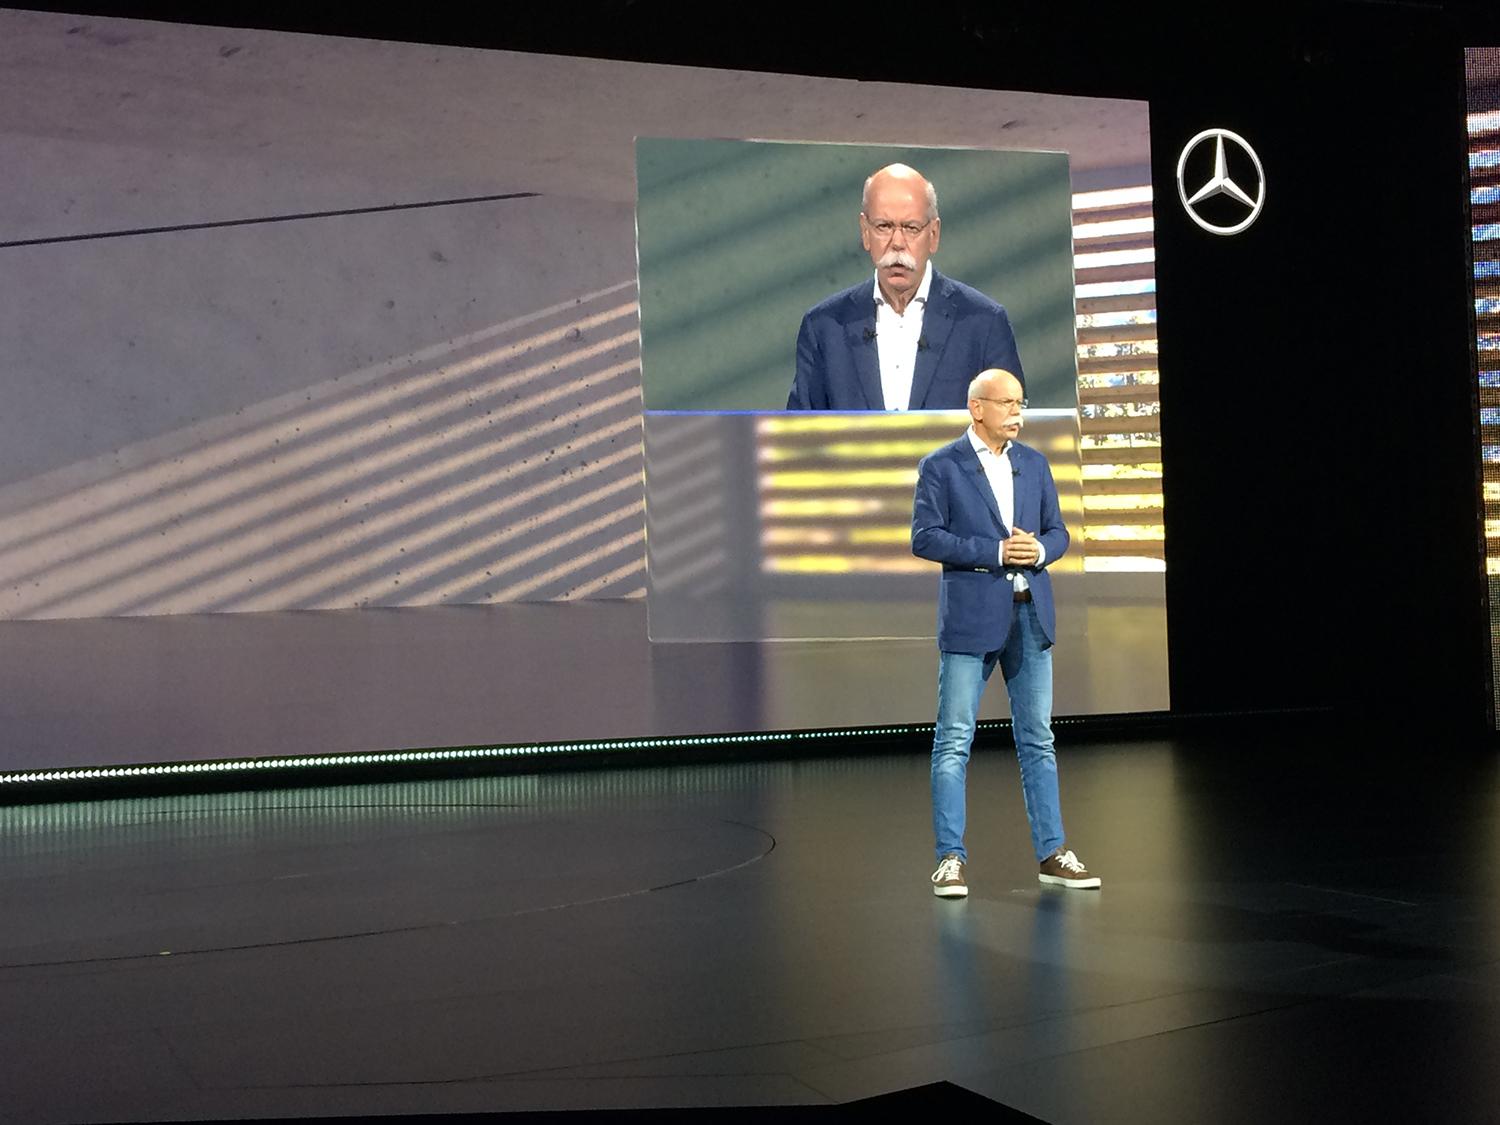 Daimlerchefen är inte ofta på besök i Sverige, men Artipelag ansågs vara den ”perfekta” platsen för lansering av världens första premium pick-up.